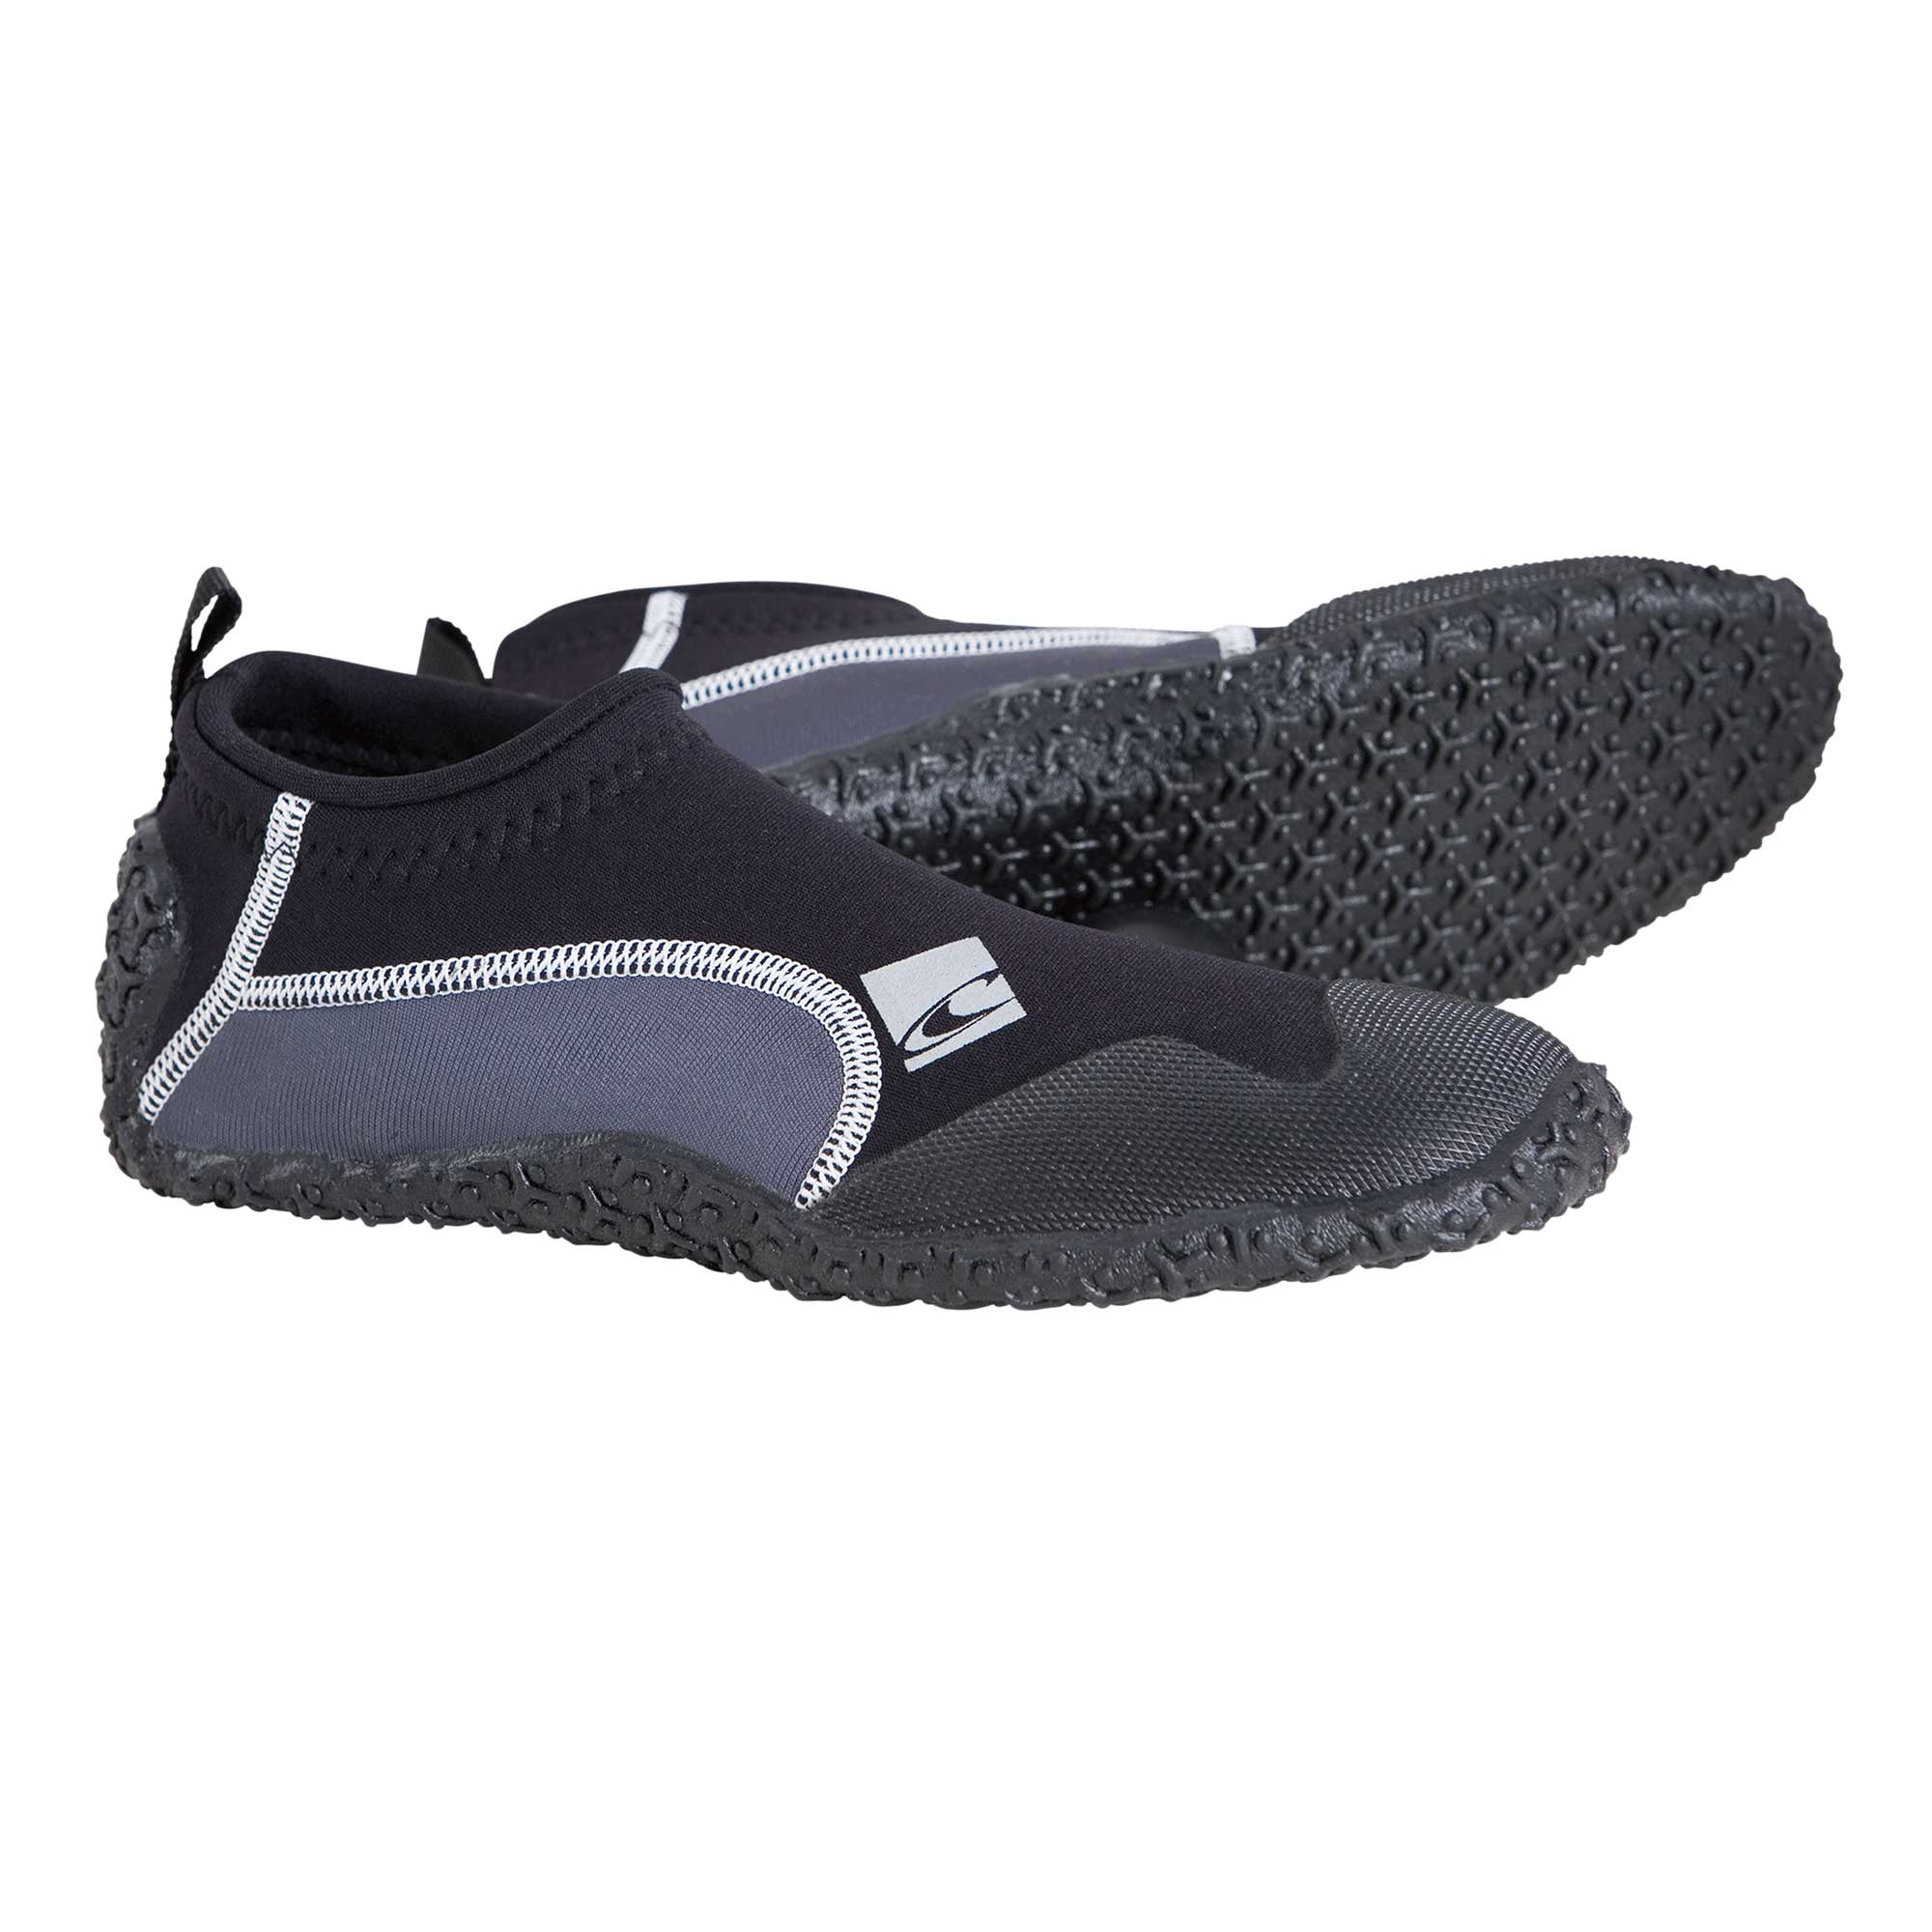 Reef Aqua Shoes Top Sellers | bellvalefarms.com